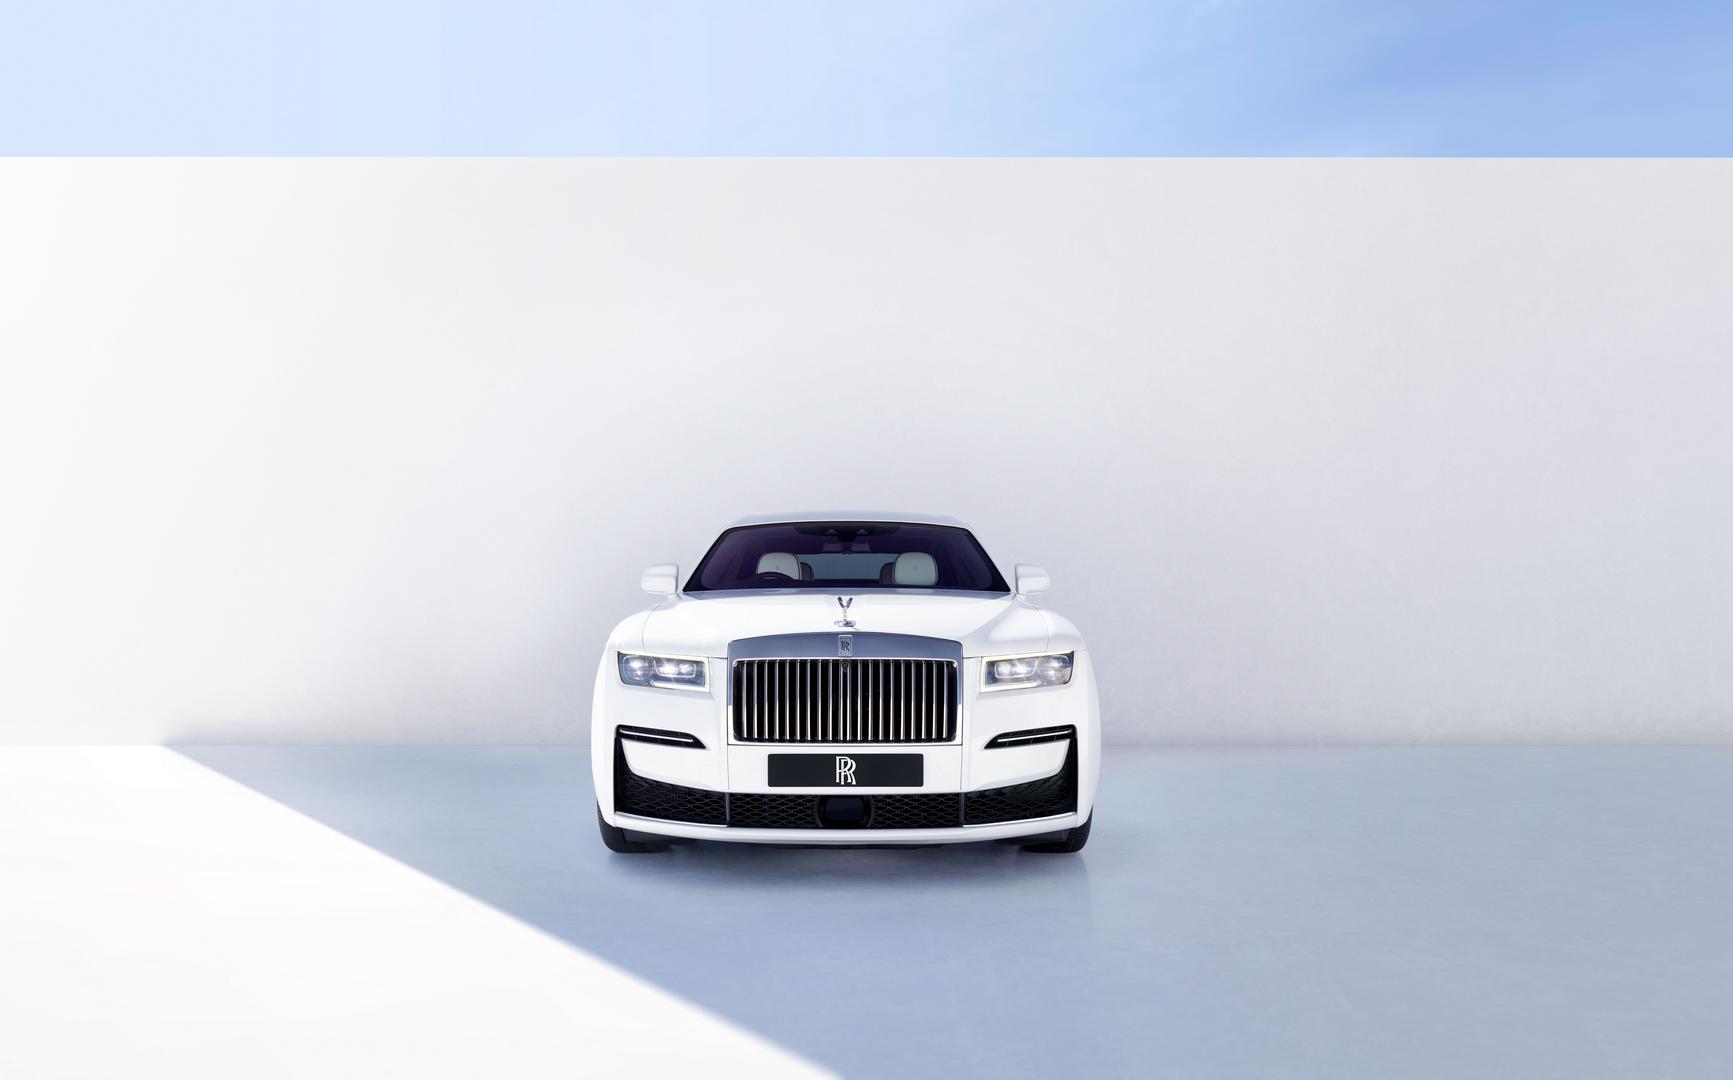 Новый Rolls-Royce Ghost, полностью изготовленный из алюминия, минимизирует количество закрытых линий вдоль своего обширного кузова. Для этого четыре мастера вручную сваривают корпус вместе, чтобы обеспечить идеально непрерывный шов. Выбор материала о